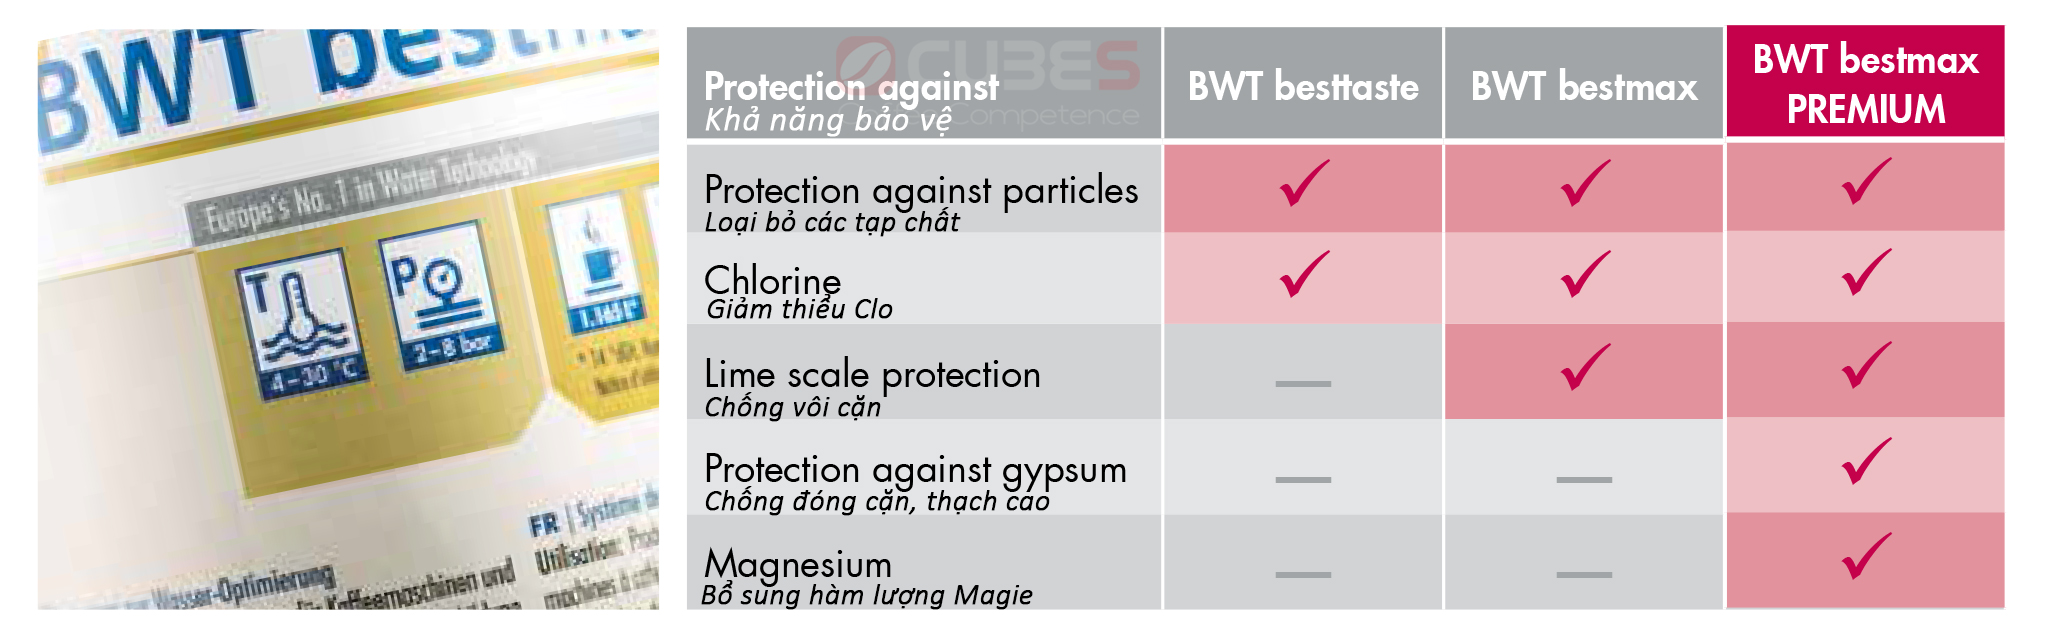 Bộ lọc nước BWT BestMax premium XL